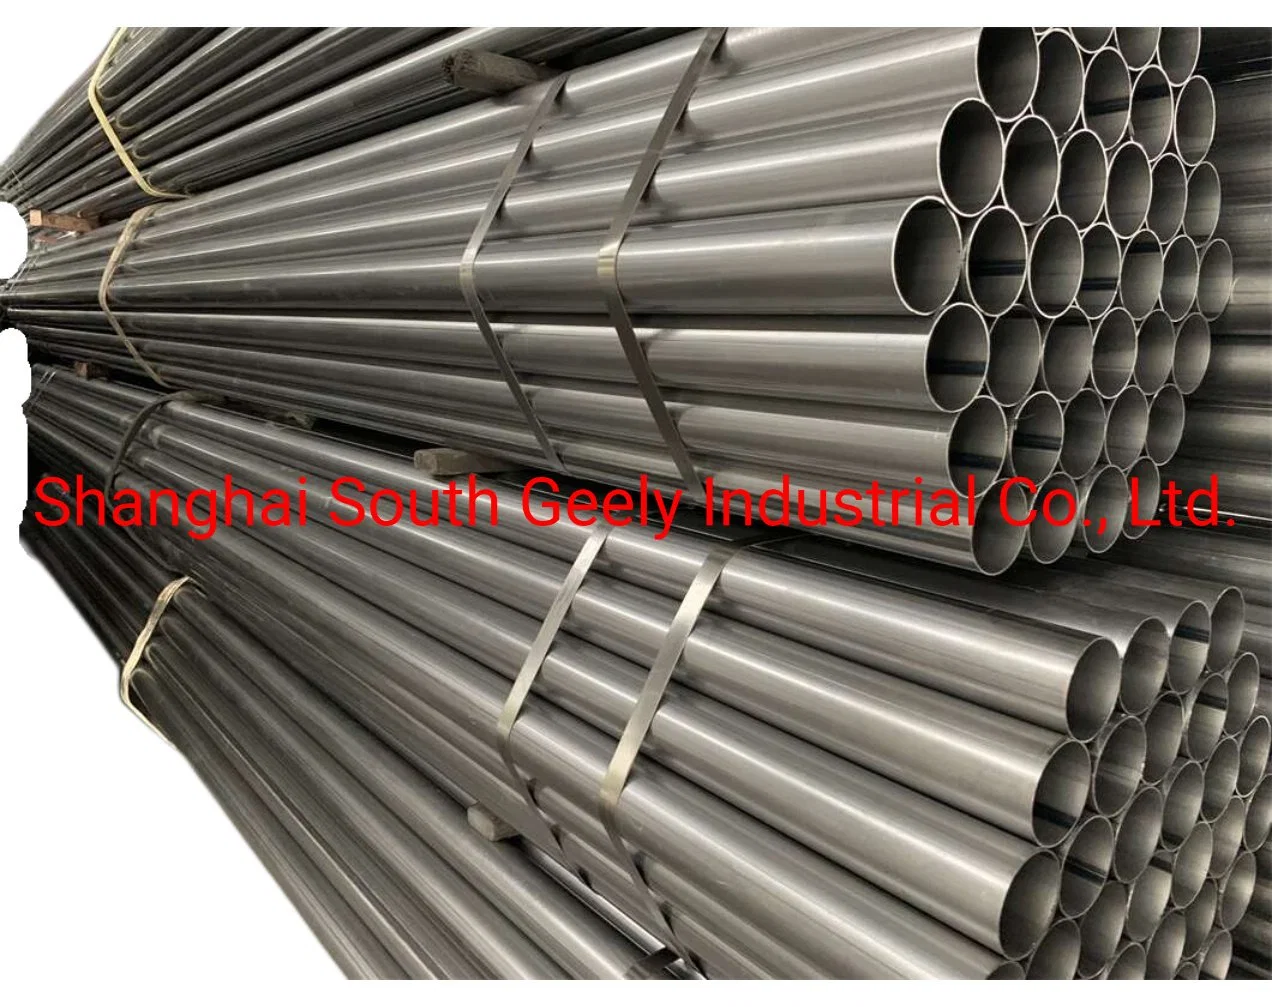 SA1c/SA1d/SA1e/Dx51d/Dx53D/Dx54D Tuyau et tube en acier soudé aluminisé/aluminium revêtu/aluzinc Hfw/carré As80/As120 selon les normes JIS/En pour silencieux ou échappement.